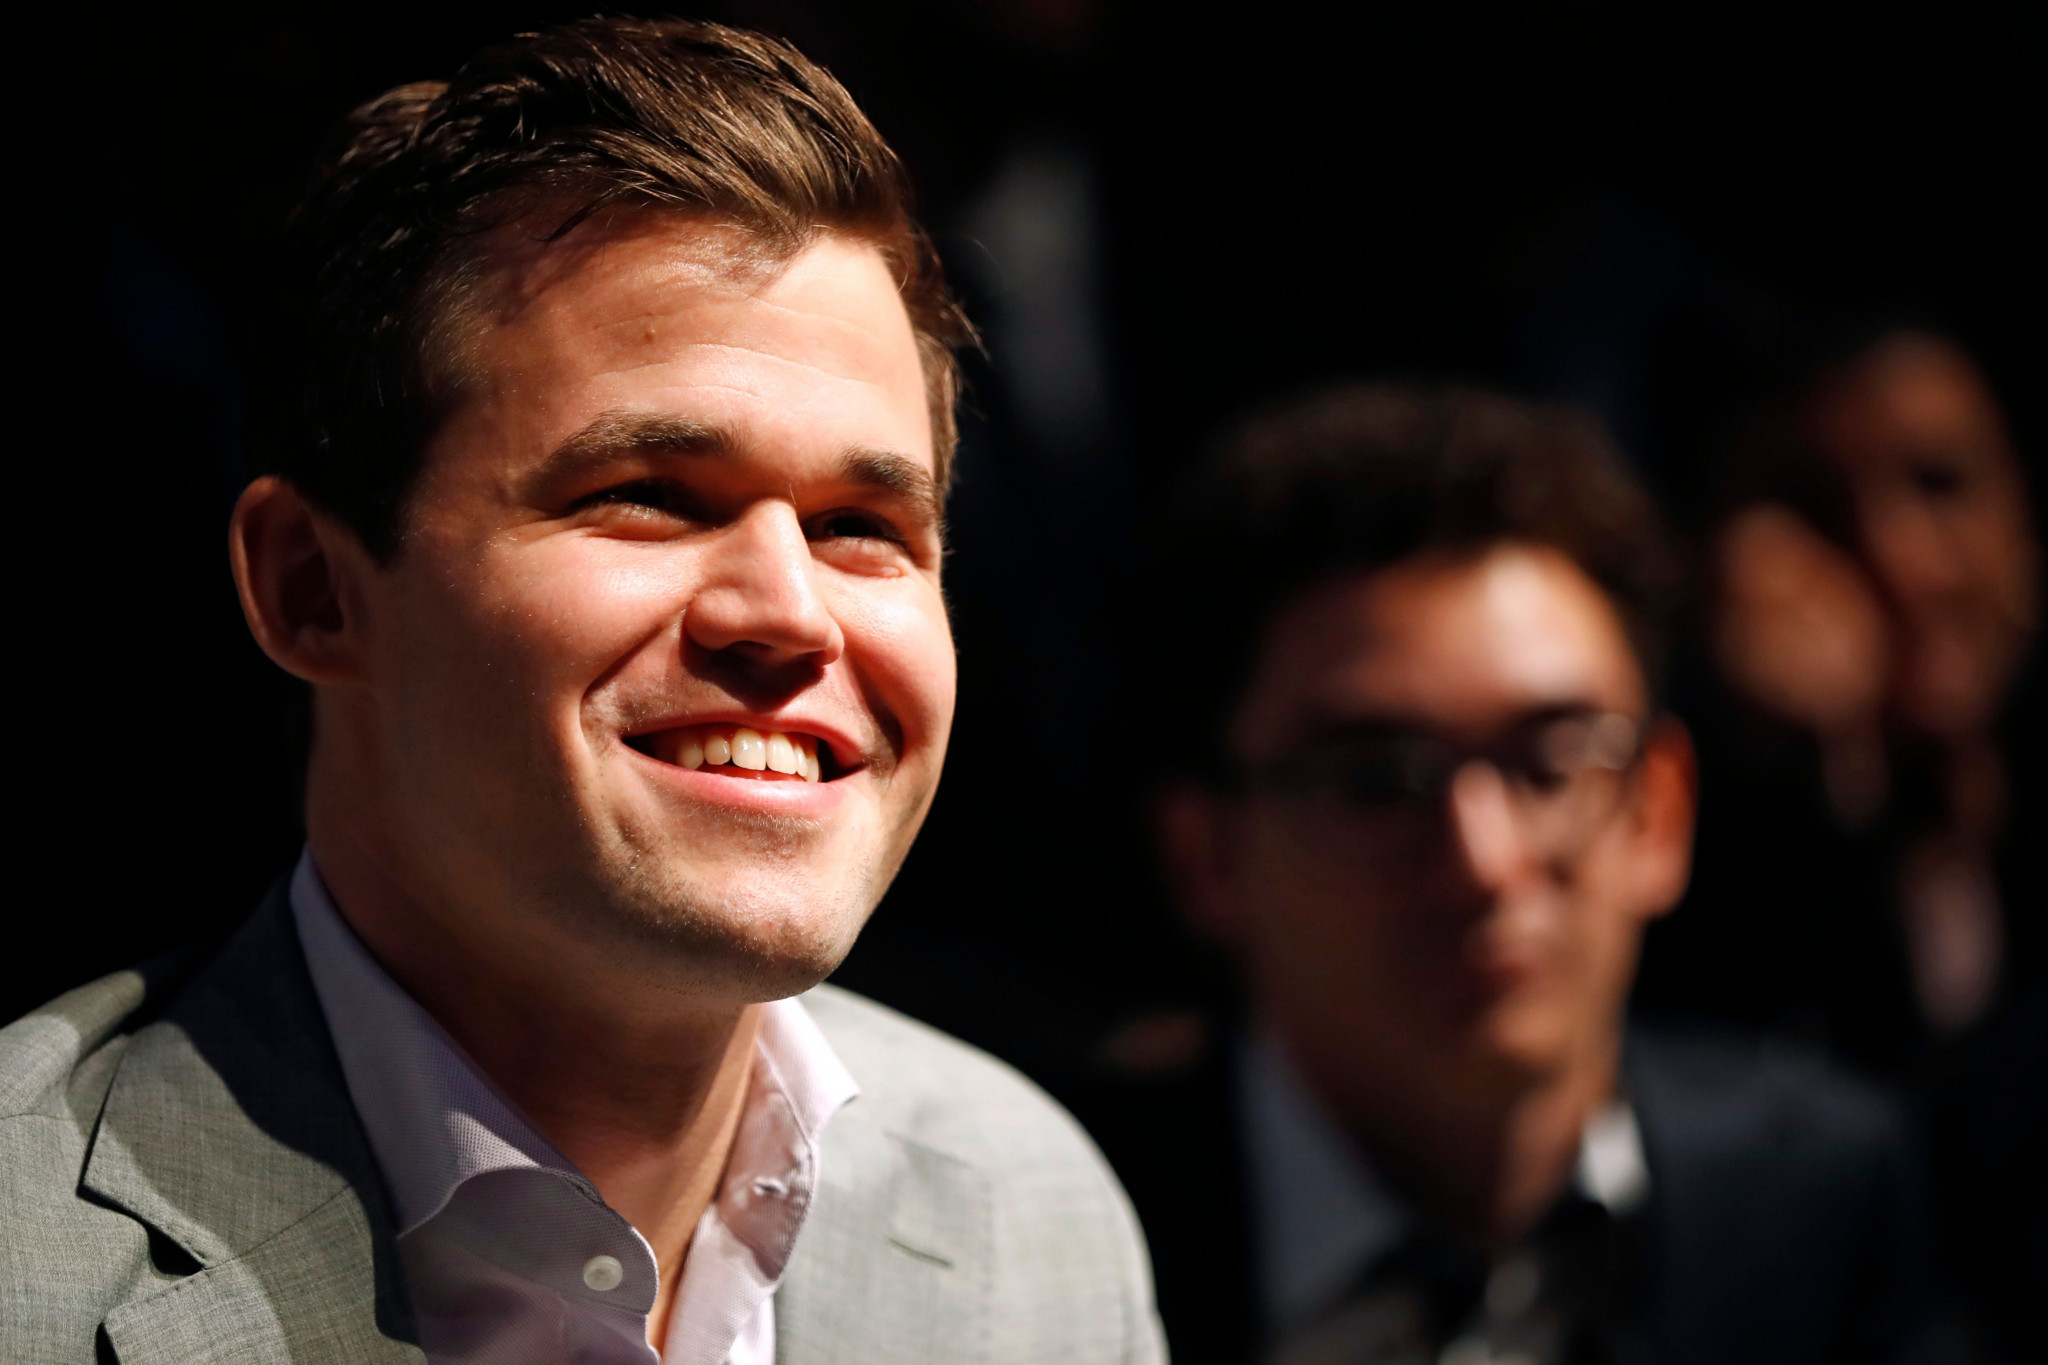 Carlsen retains world chess title after unprecedented tiebreak